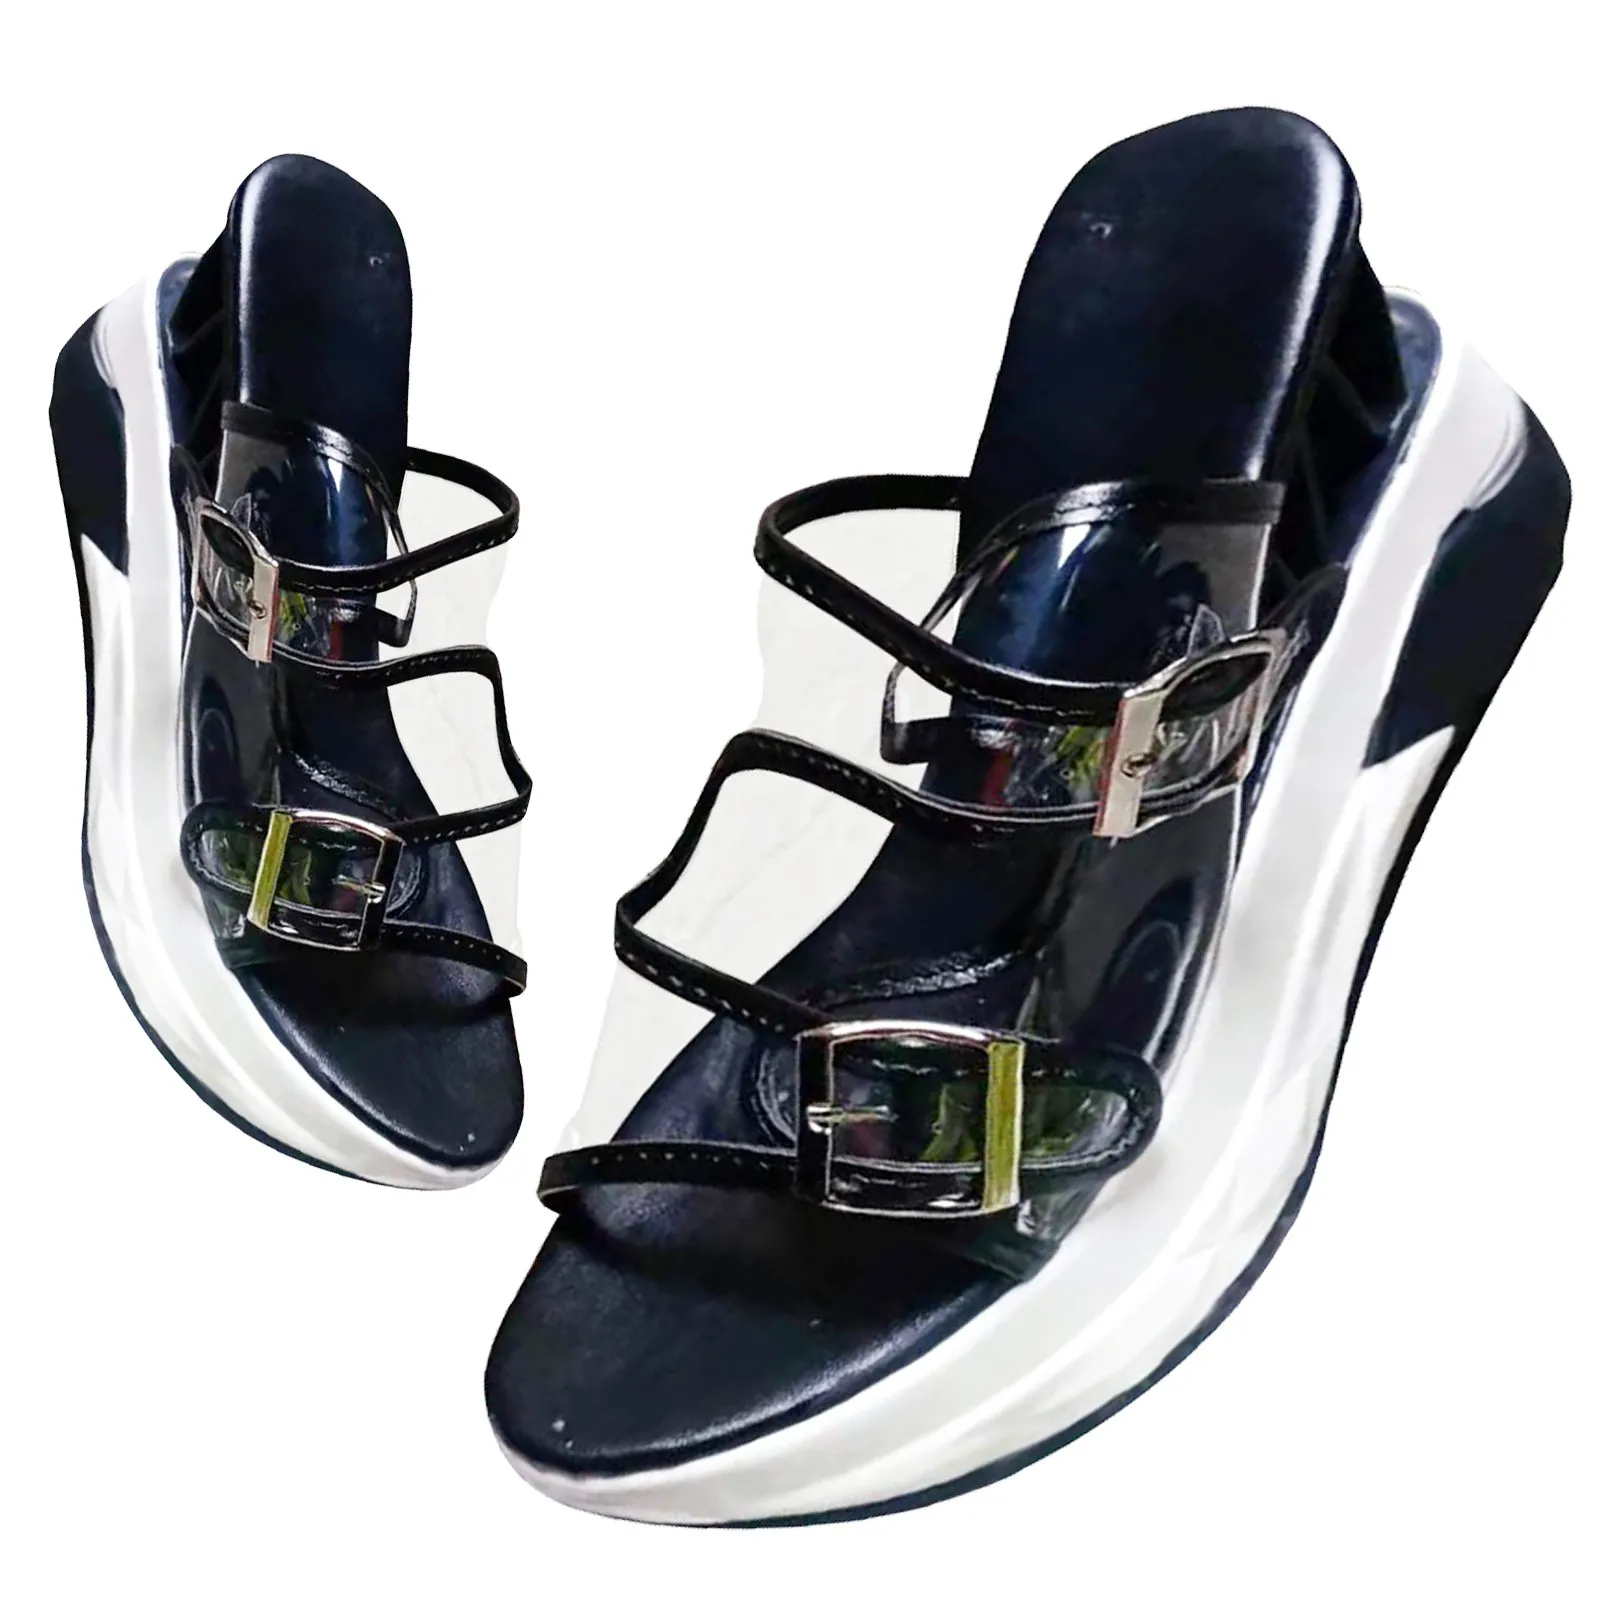 

Platform Women's Large Size Transparent Belt Buckle Sandals Open Toe Wedge Casual Women's Shoes Sandalias De Las Mujeres